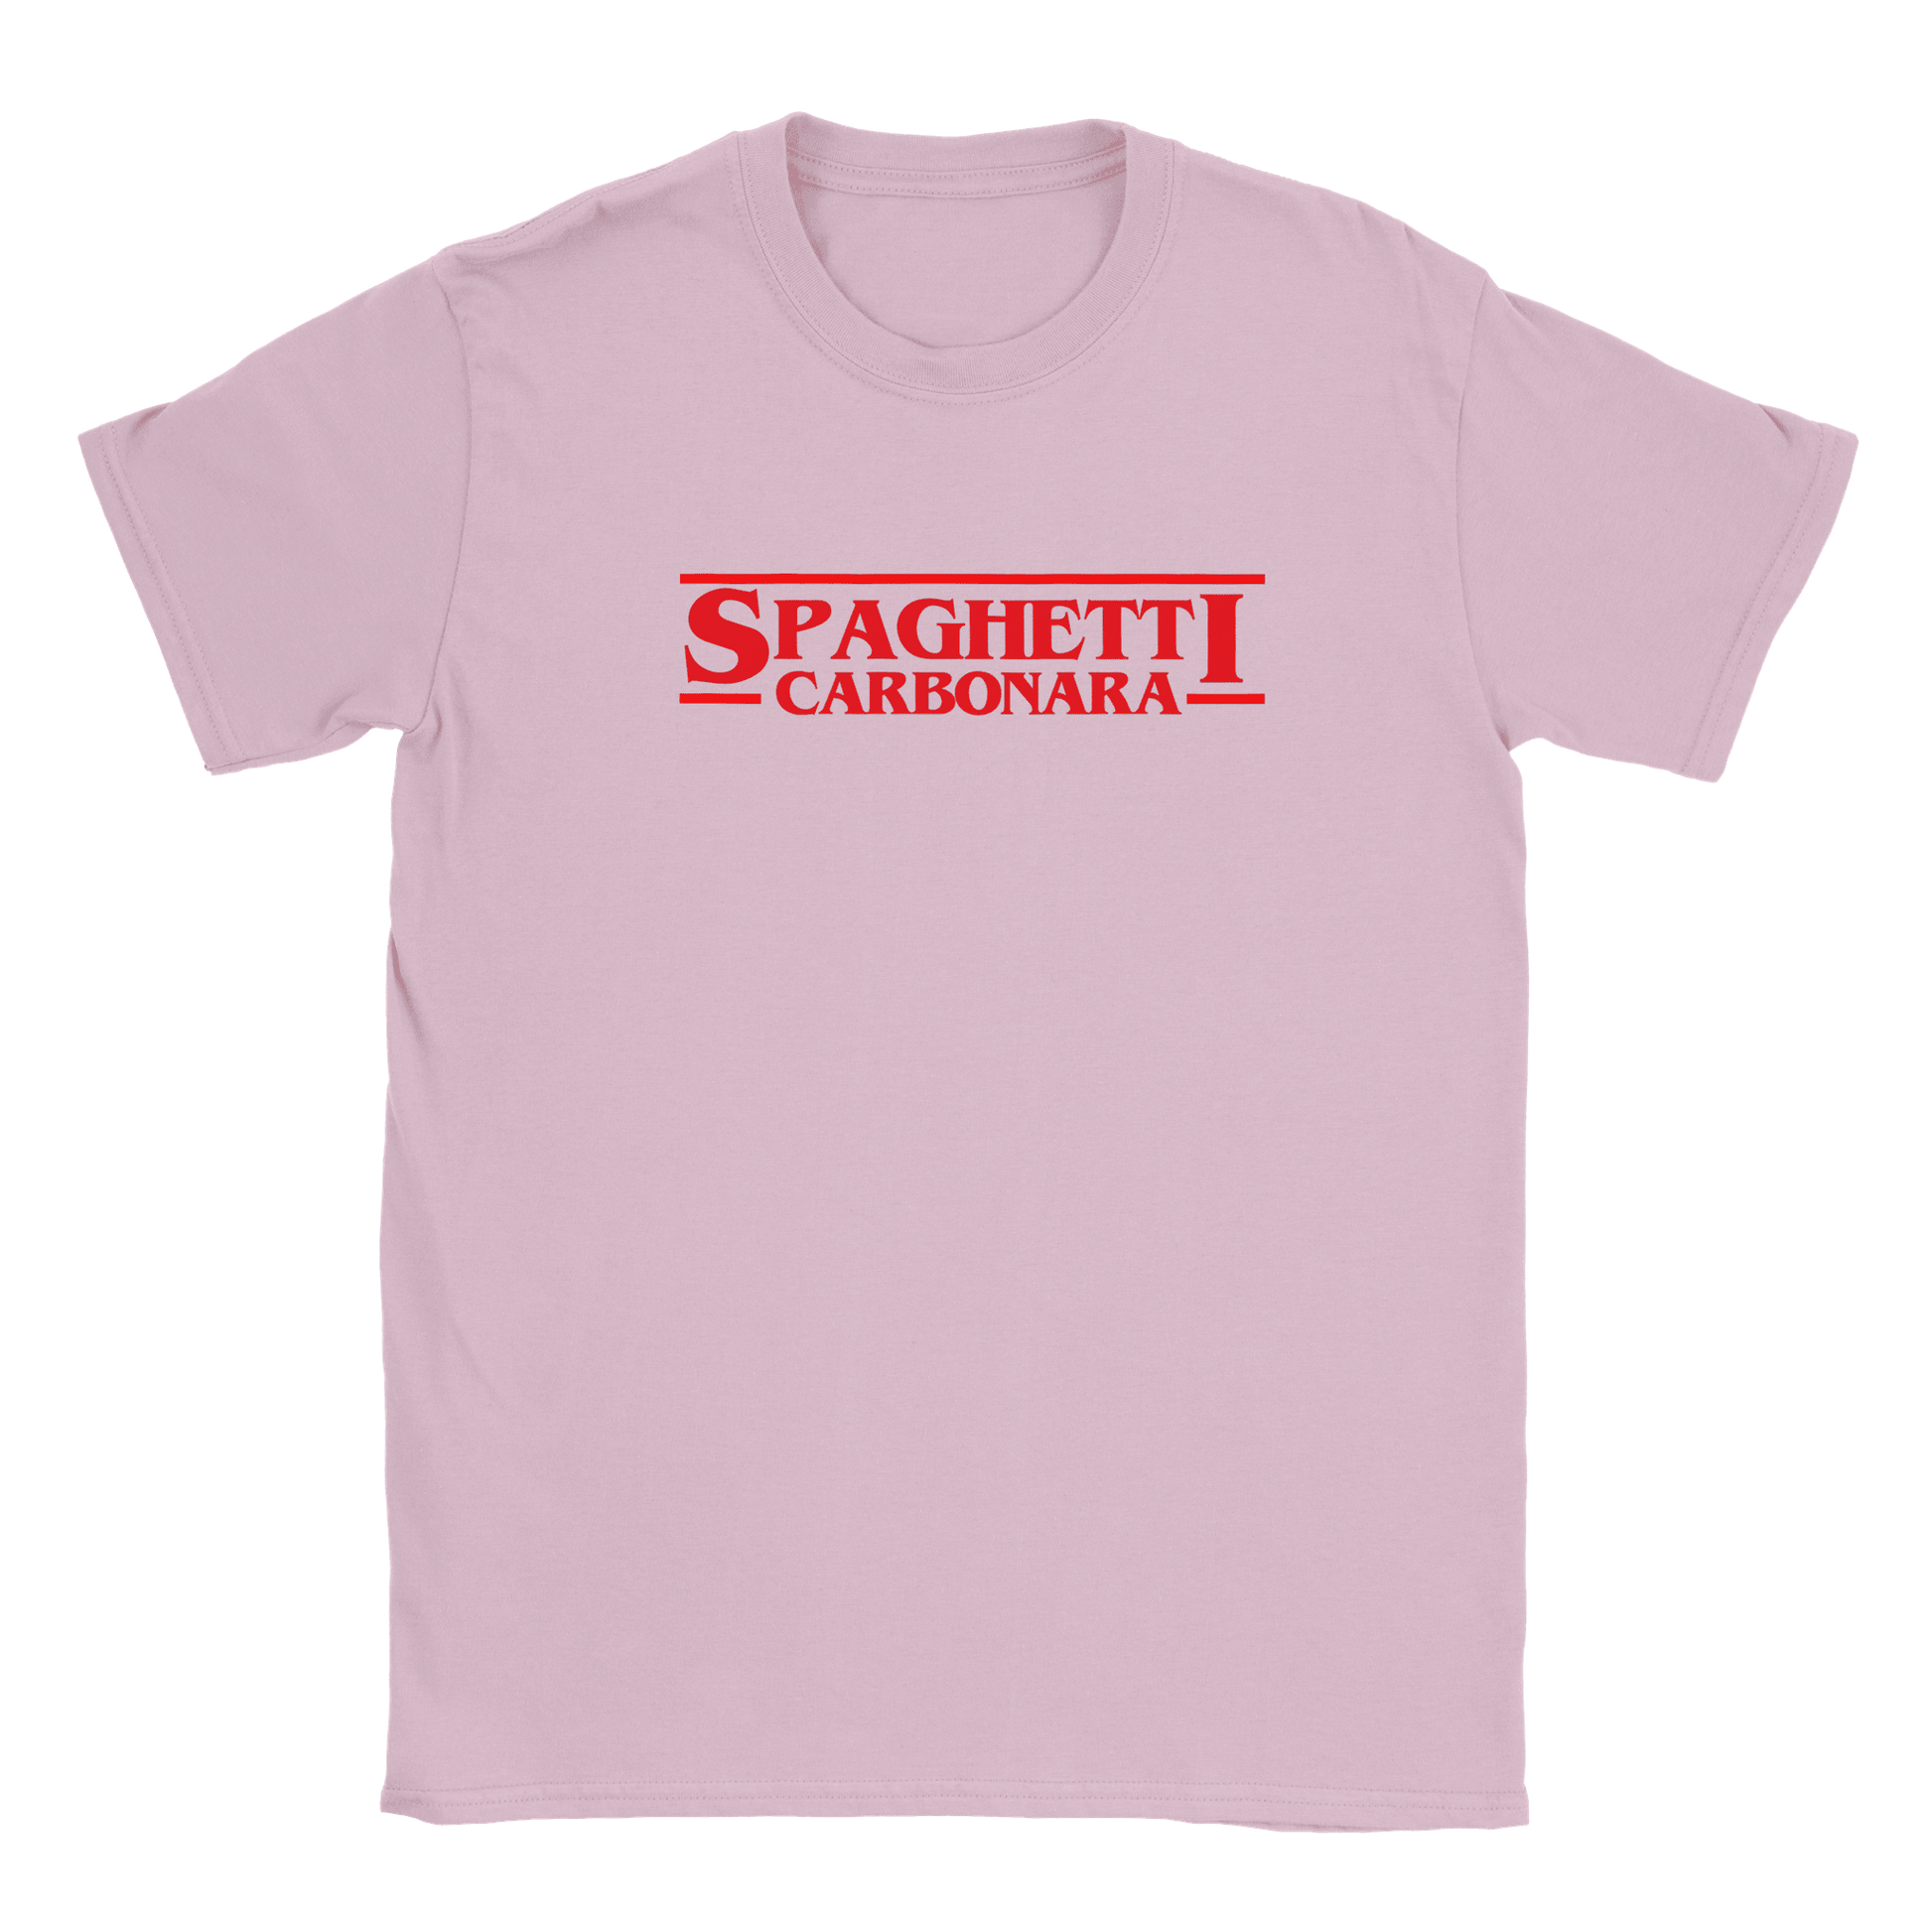 Spaghetti Carbonara - T-shirt för barn Rosa